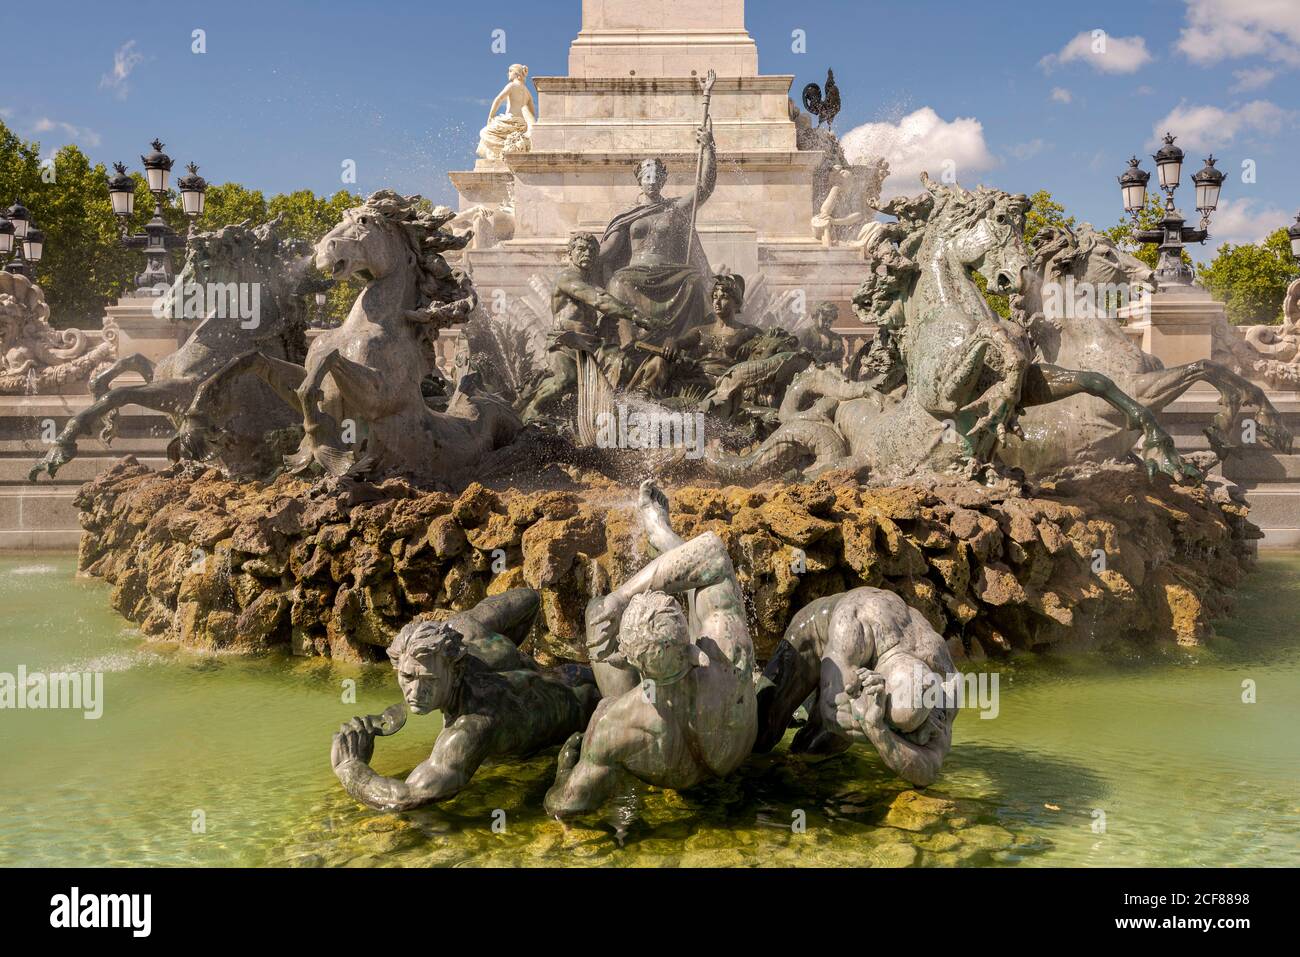 Monument aux Girondins in the Place des Quinconces, Bordeaux, France Stock Photo